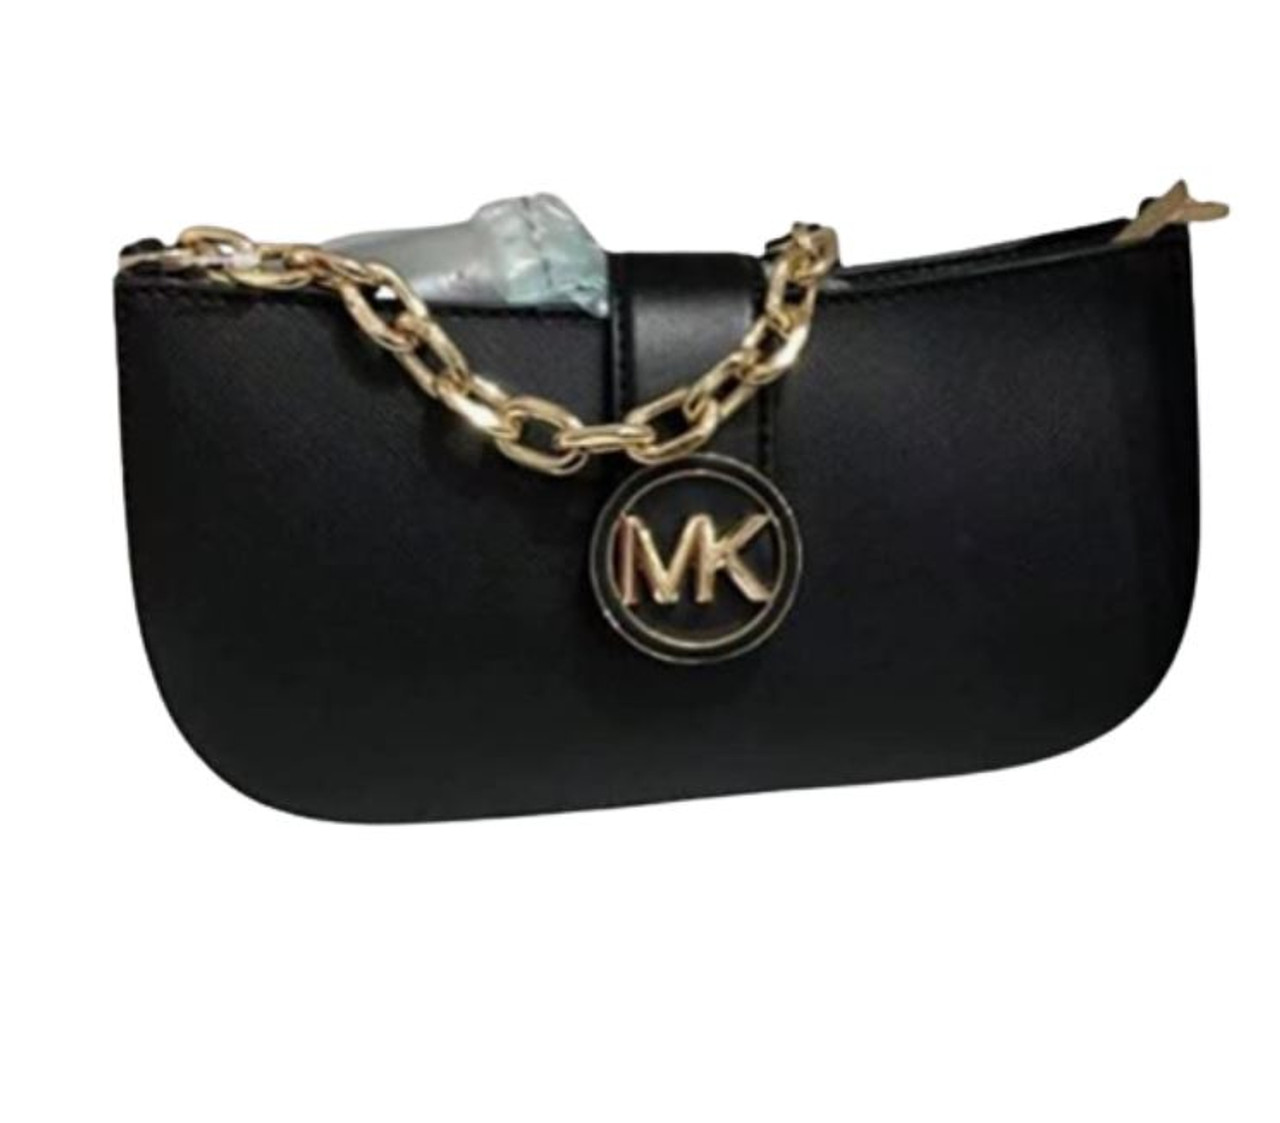 Michael Kors Carmen XS Leather Pouchette Shoulder Bag (Black